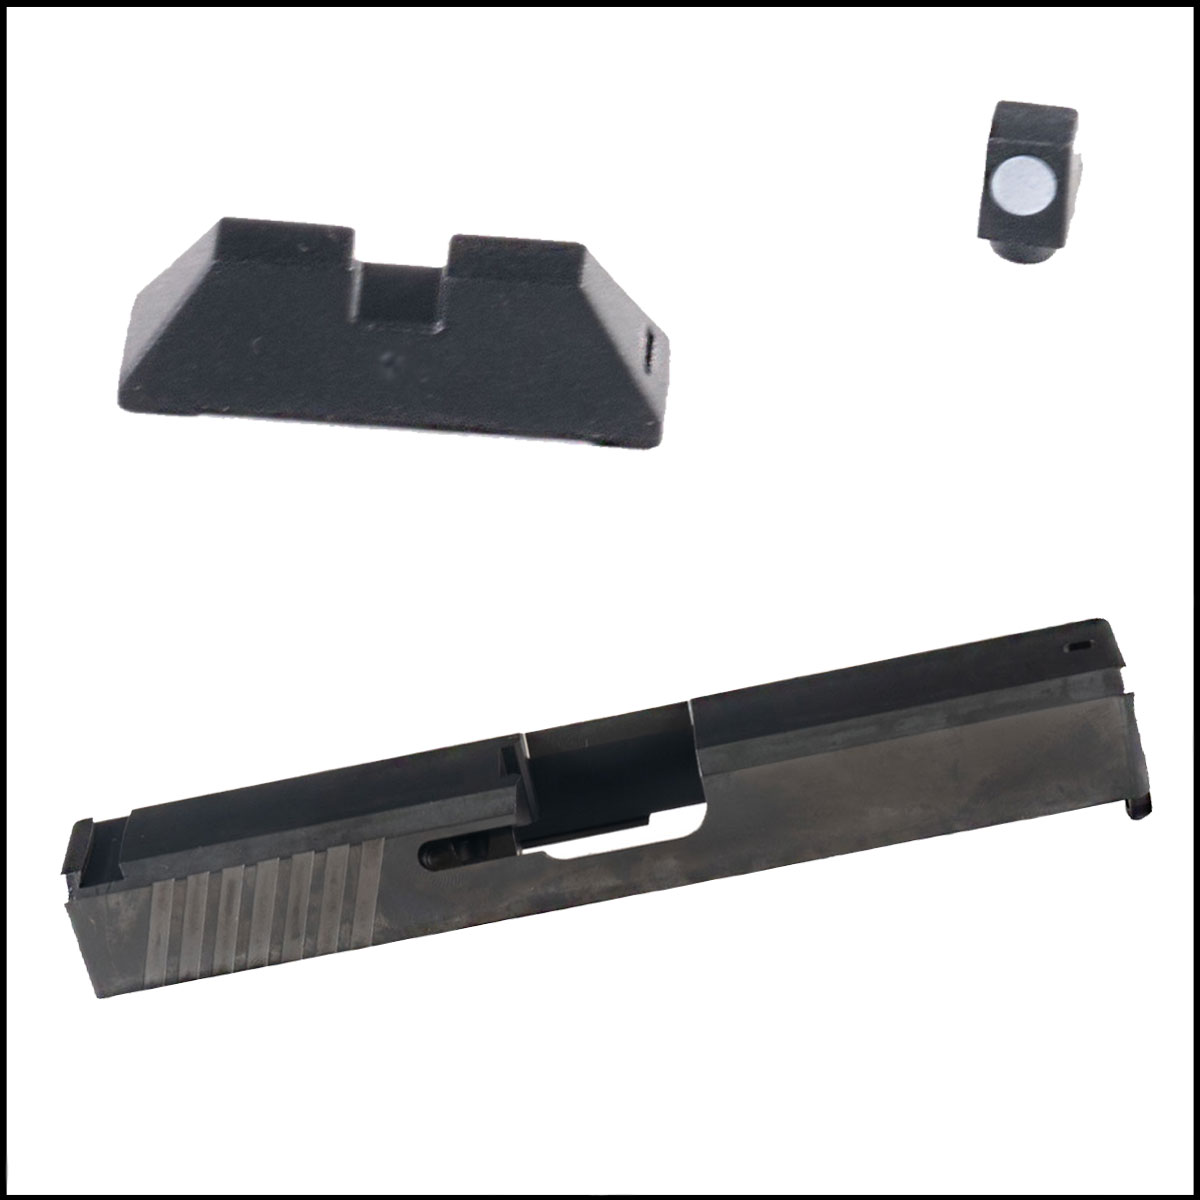 Glock Slide + Optic: SCT Manufacturing Short Sight Assembly Kit  + Matrix Arms Glock 19 Slide